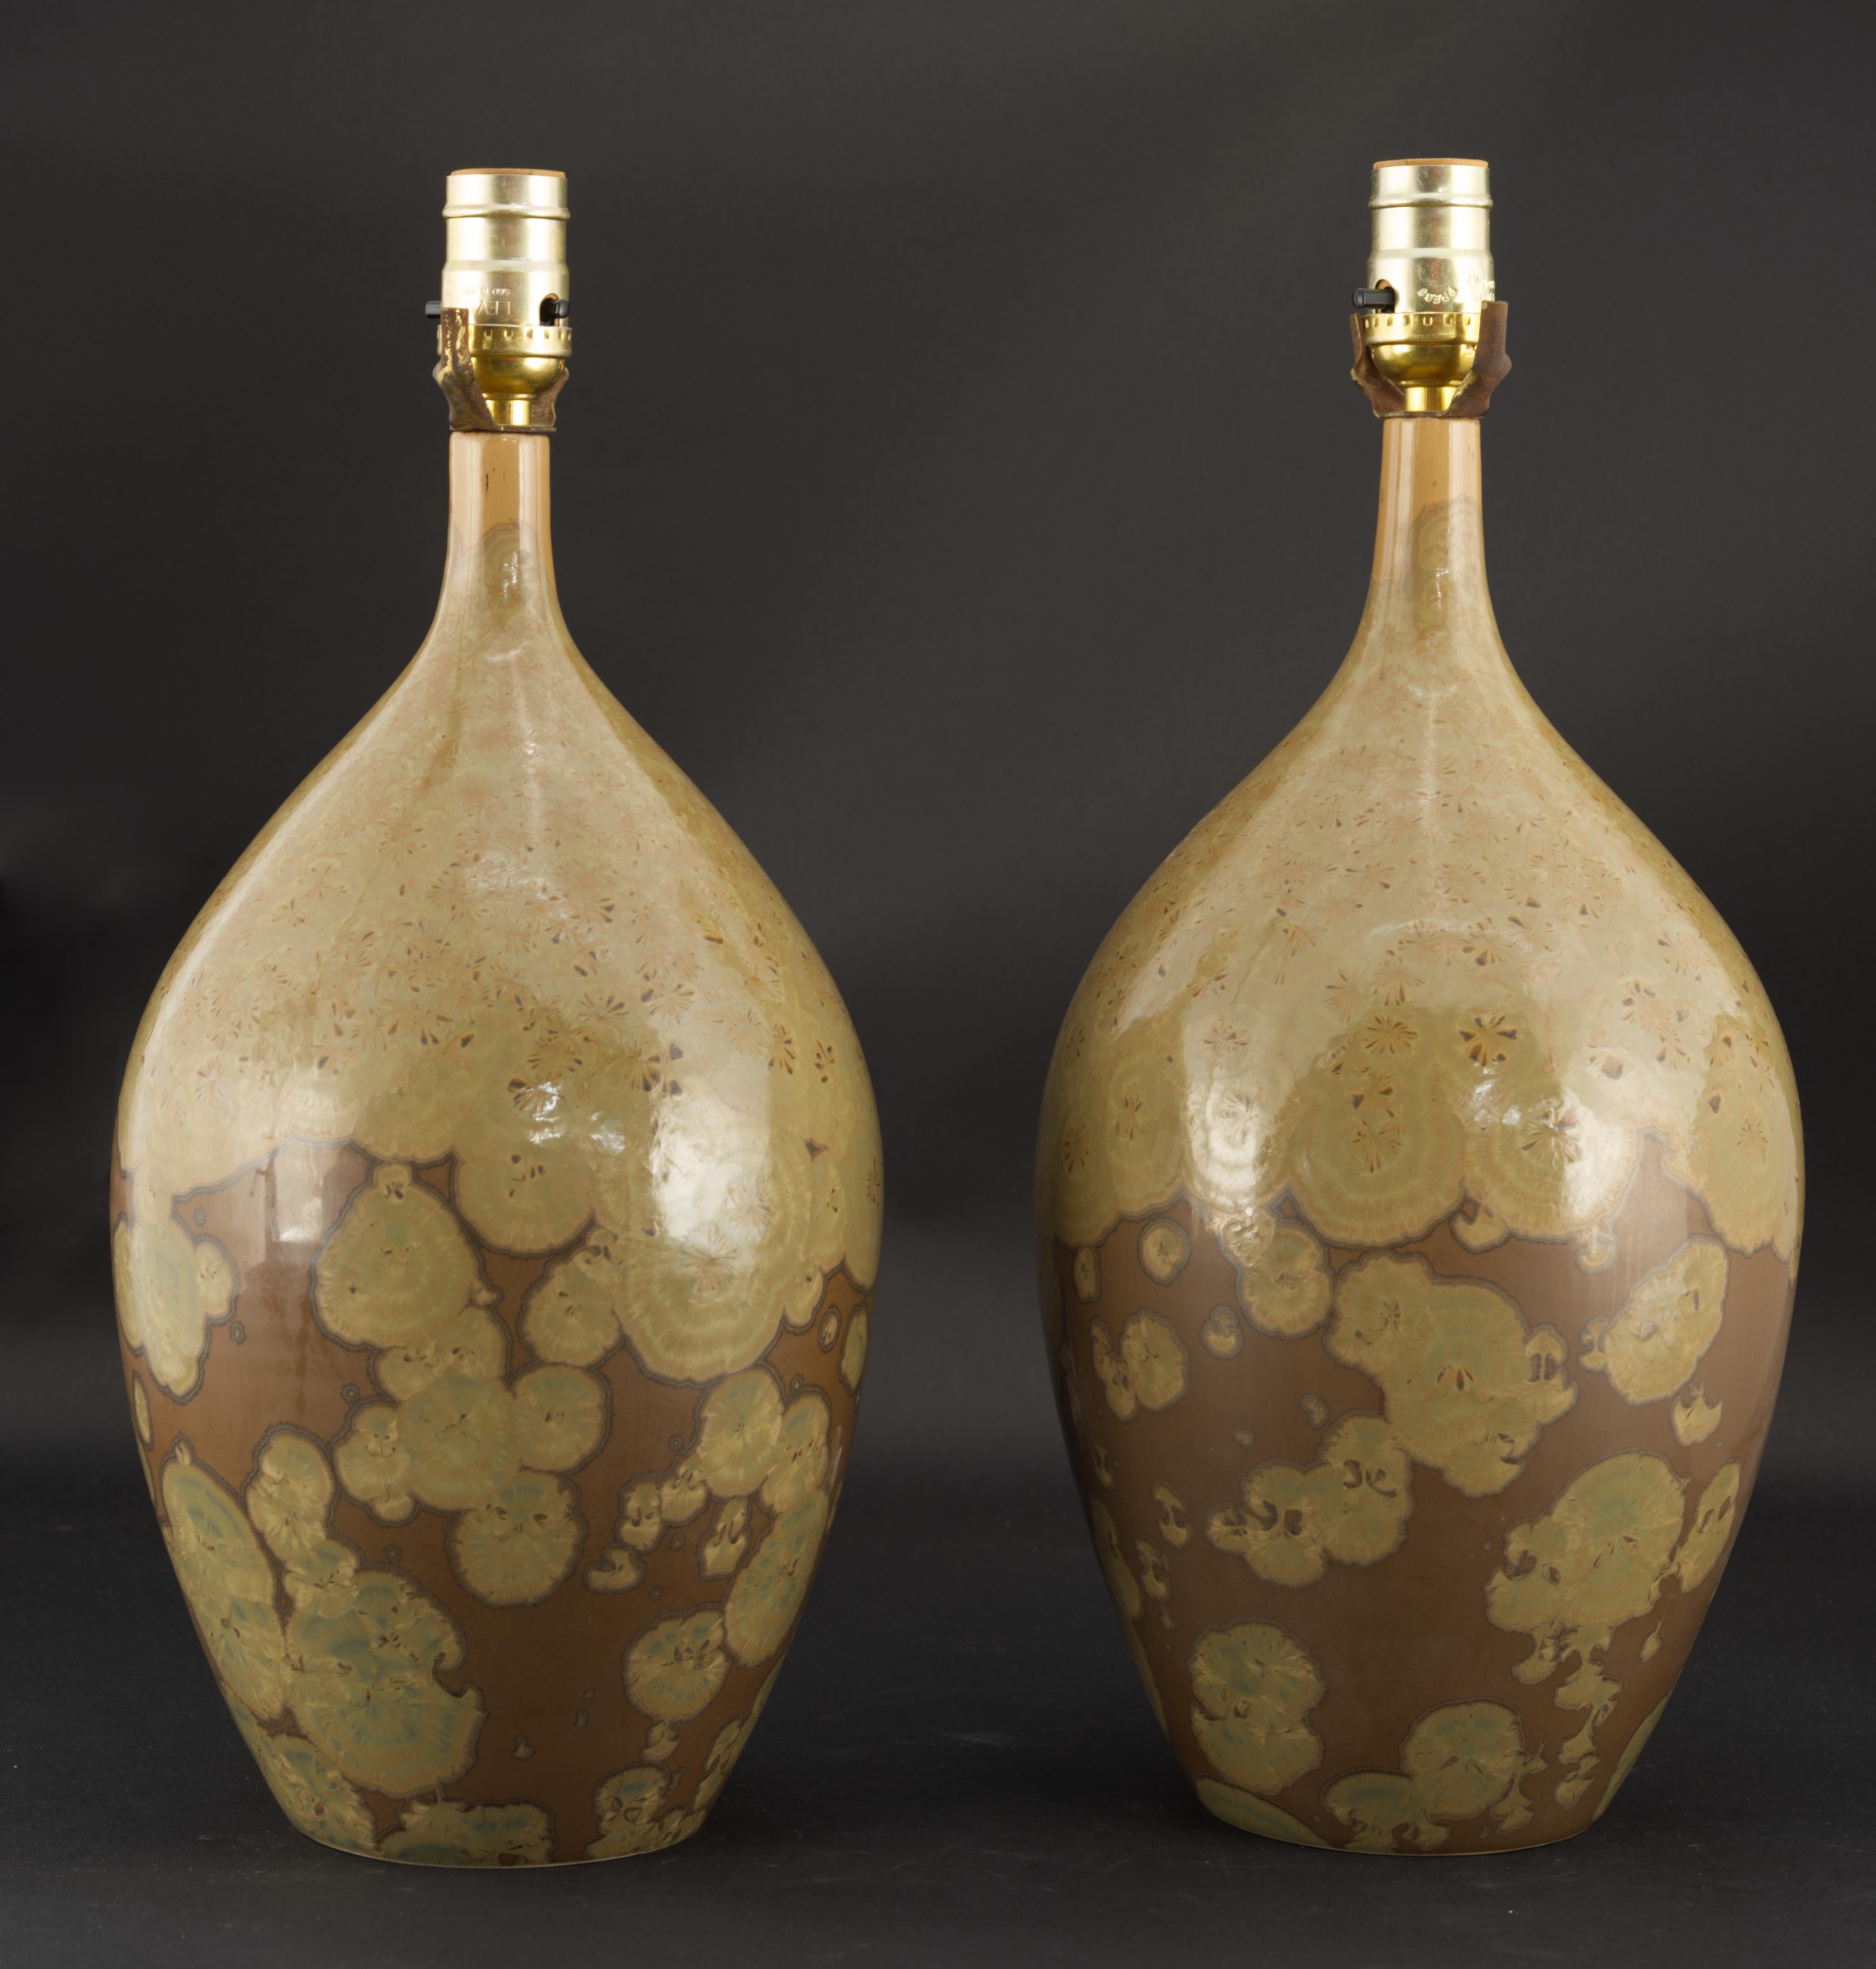 La paire de lampes en céramique vintage studio pottery est décorée de glaçures cristallines dans des tons organiques et terreux. Les corps ont été jetés à la main sur un tour ; les cristaux de couleur Oliver sur une base de couleur chocolat au lait